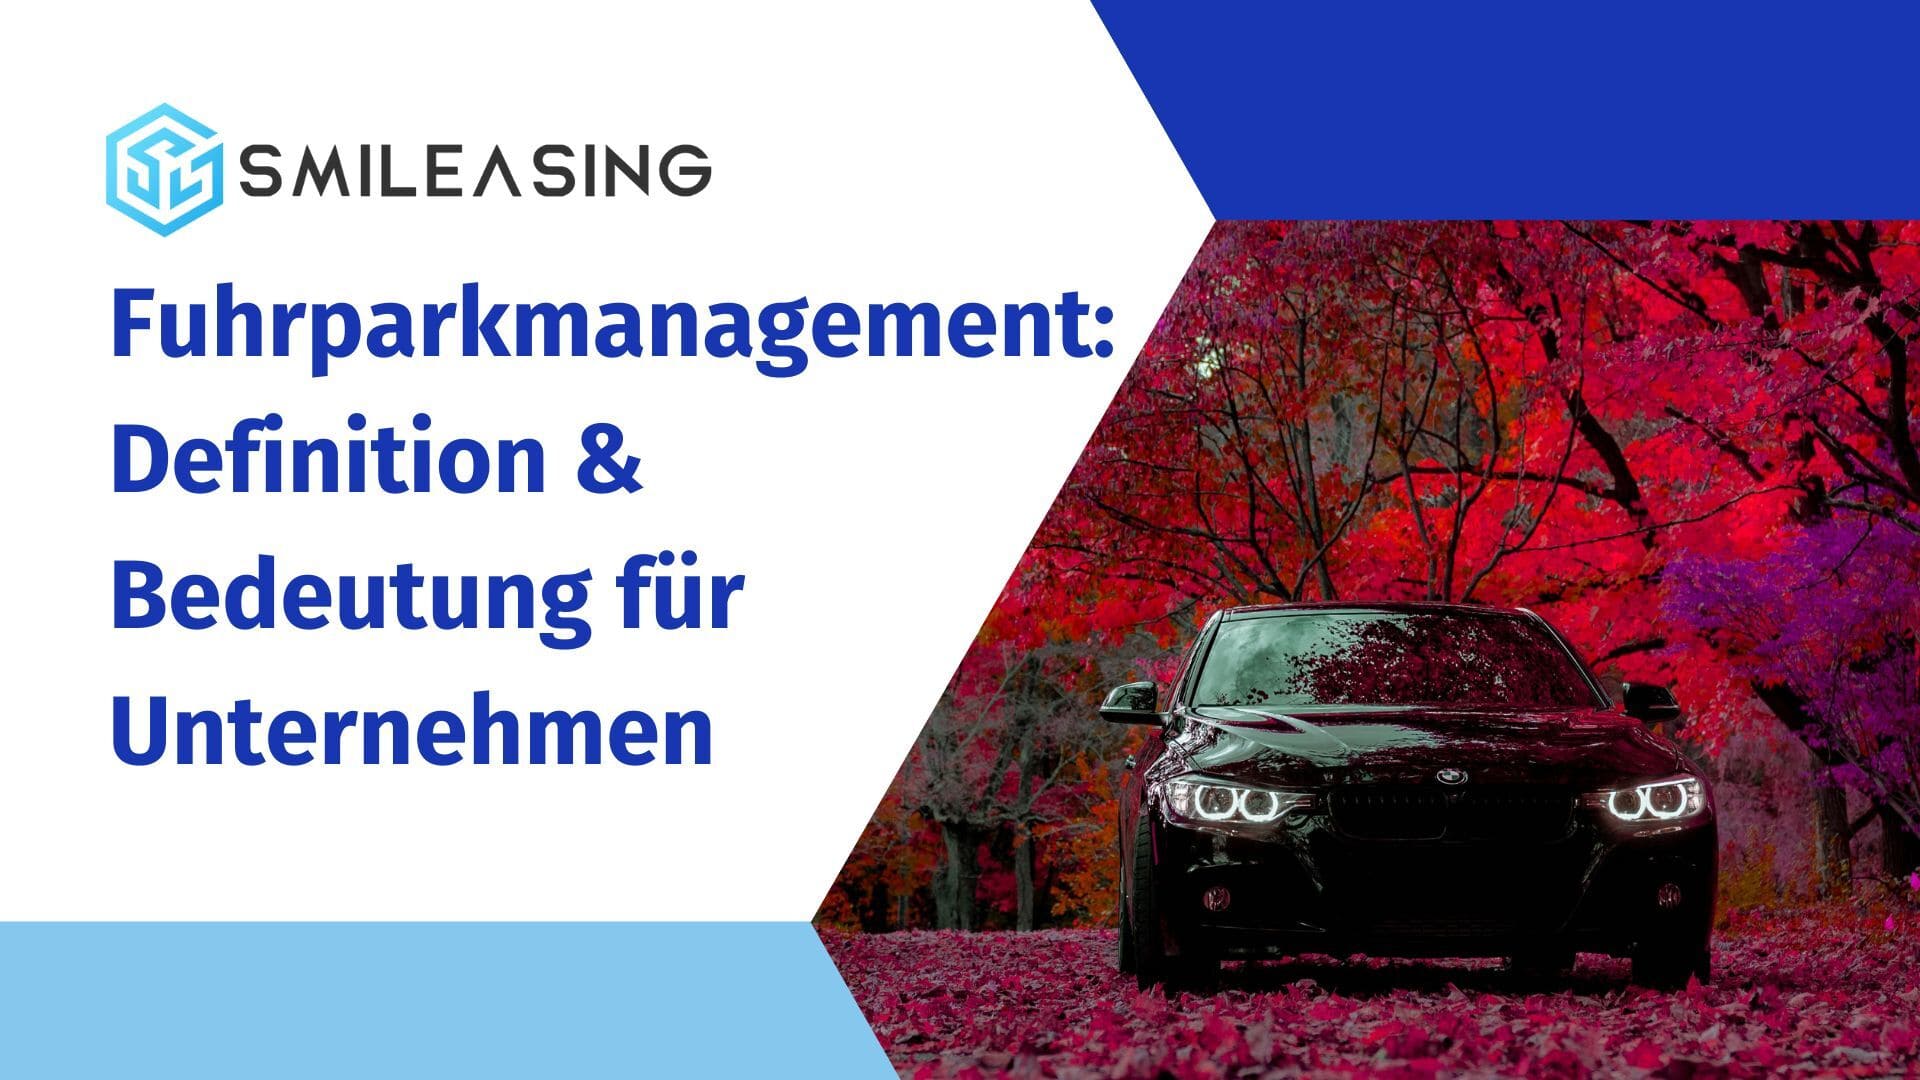 Fuhrparkmanagement - Definition und Bedeutung für Unternehmen